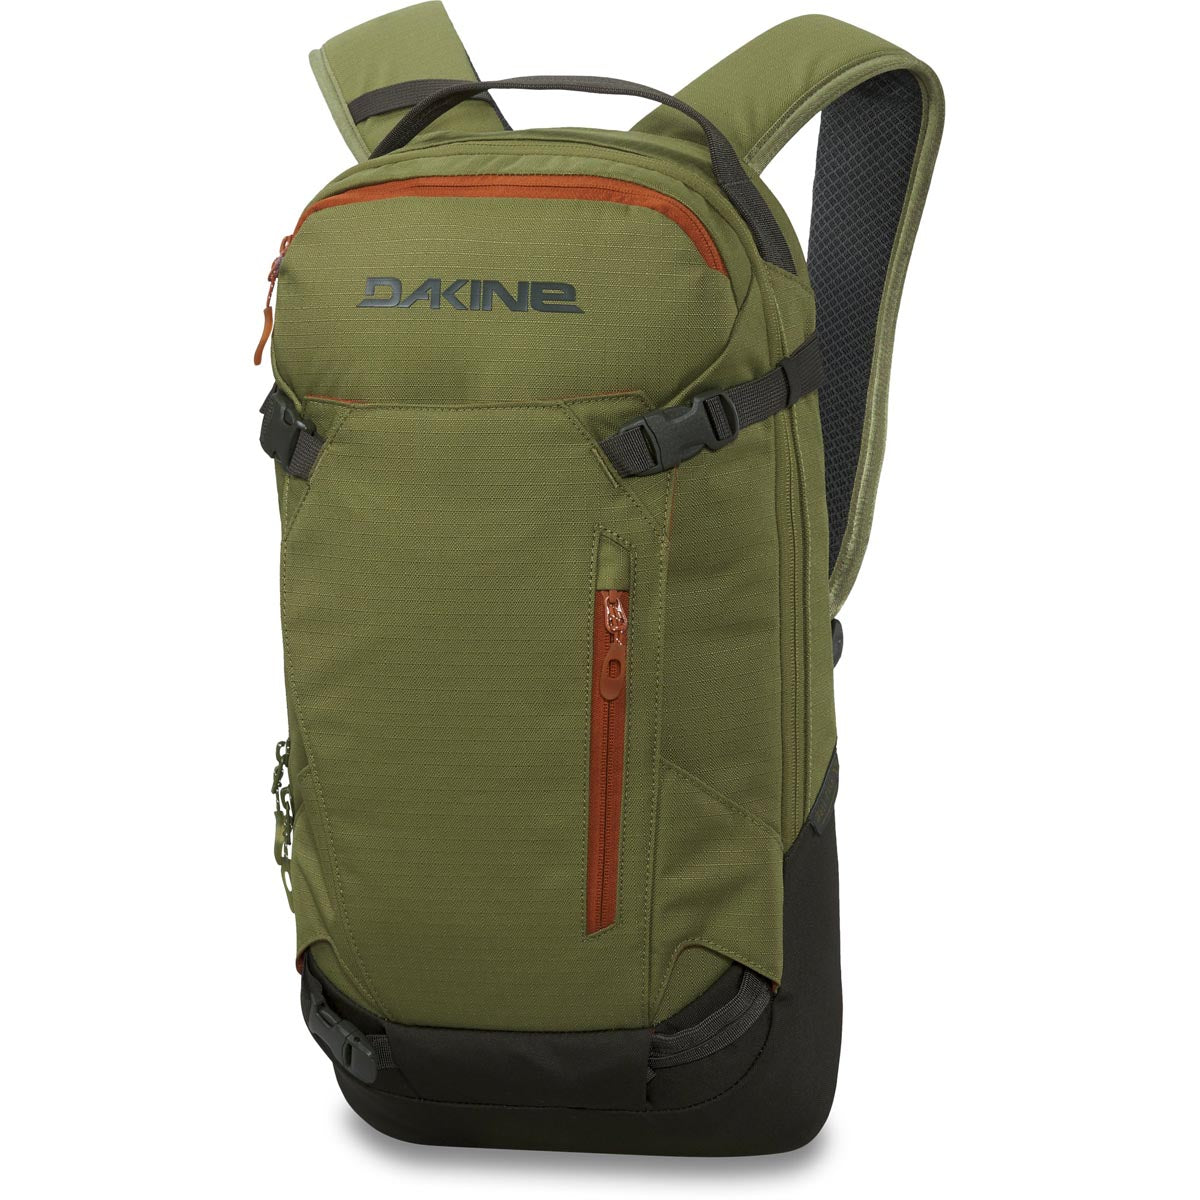 Dakine Heli Pack 12l Backpack - Utility Green image 1